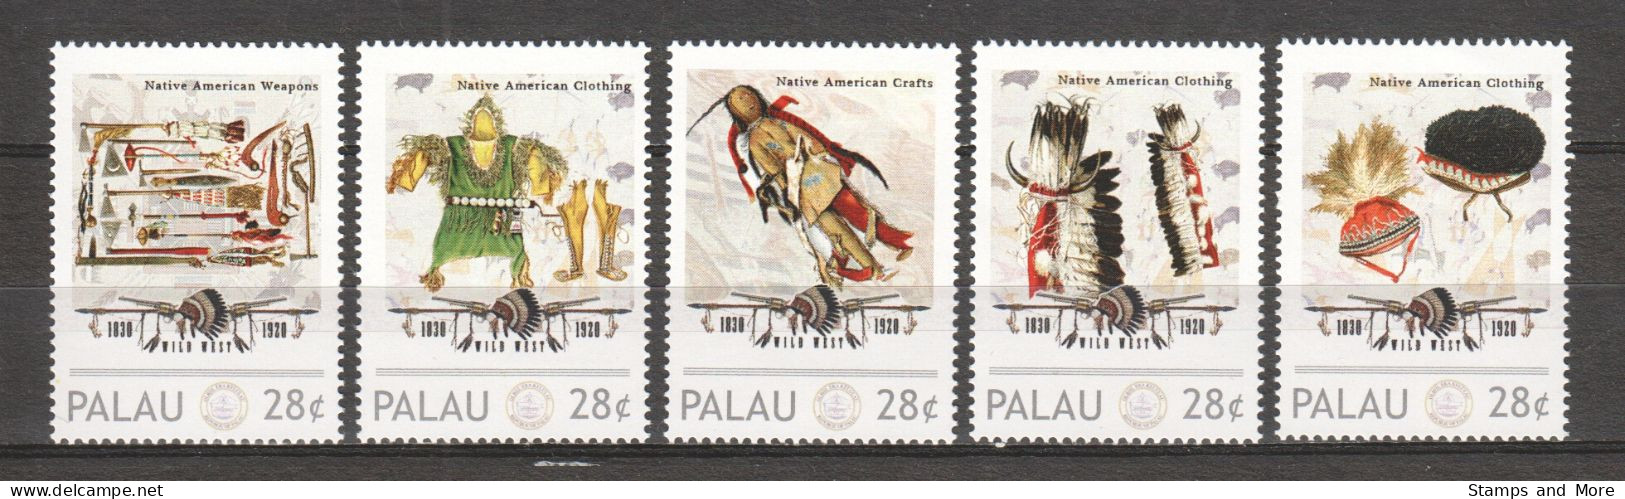 Palau - MNH Set (9) NATIVE AMERICANS WEAPONS - CLOTHING - CRAFT - WILD WEST 1830-1920 - Indiens D'Amérique